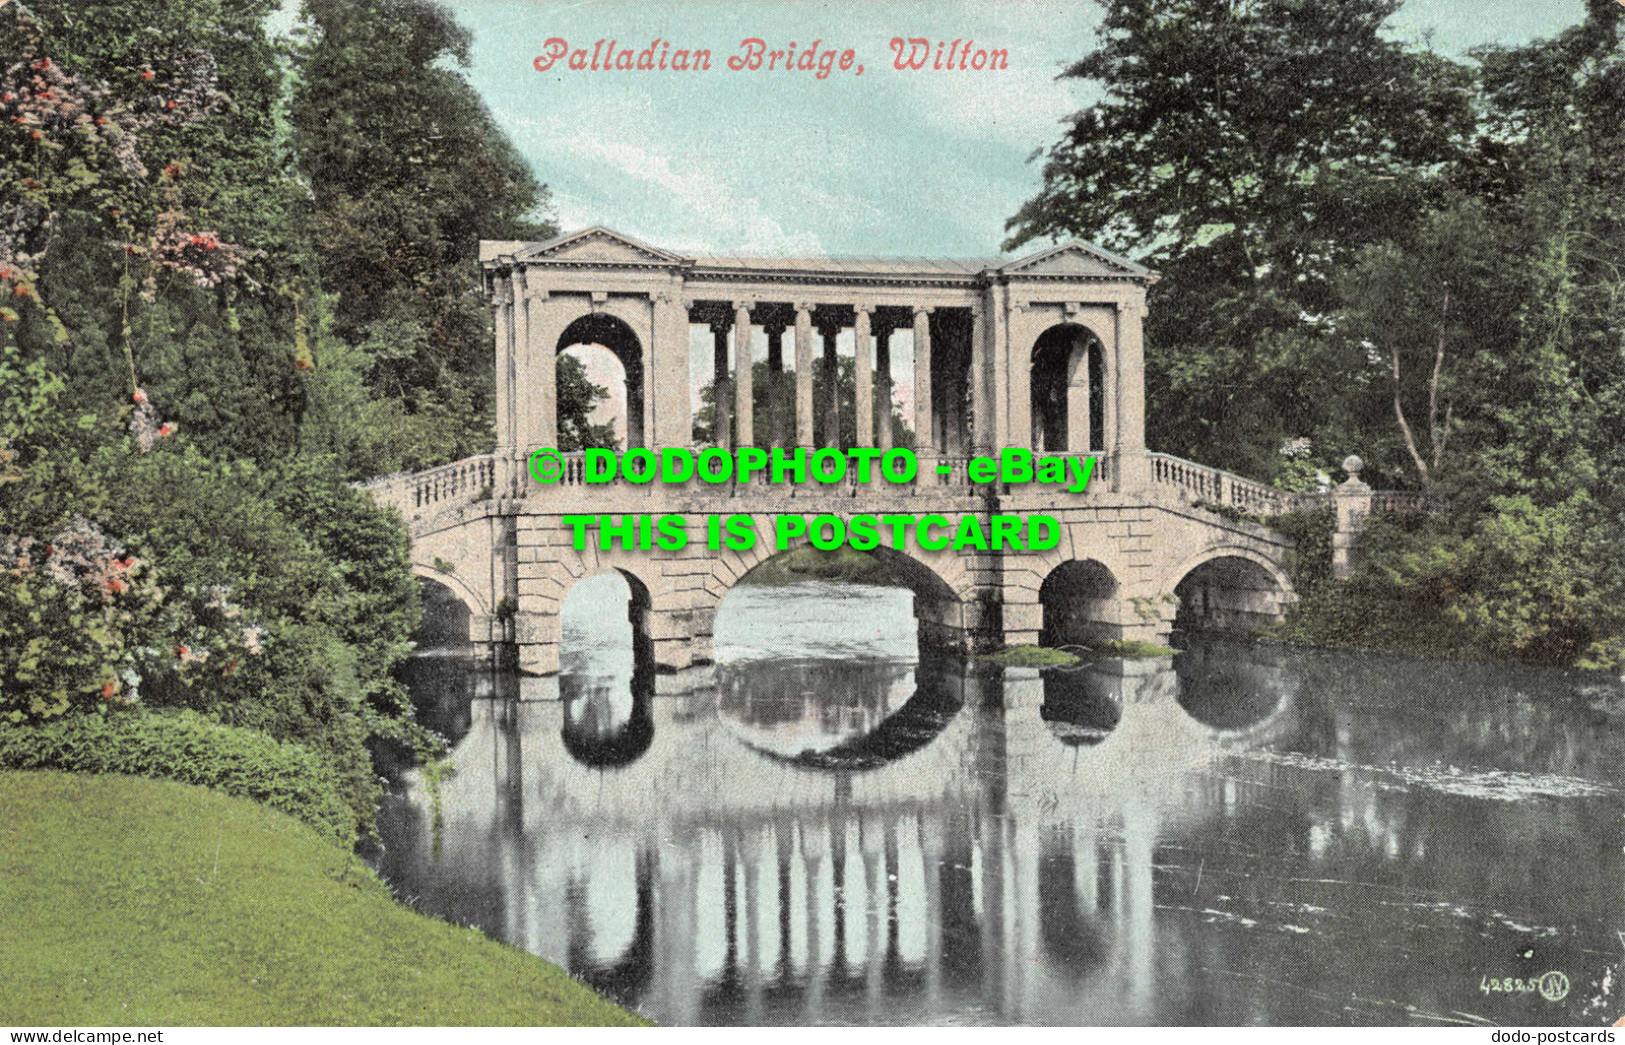 R551278 Wilton. Palladian Bridge. Valentine Series - Welt